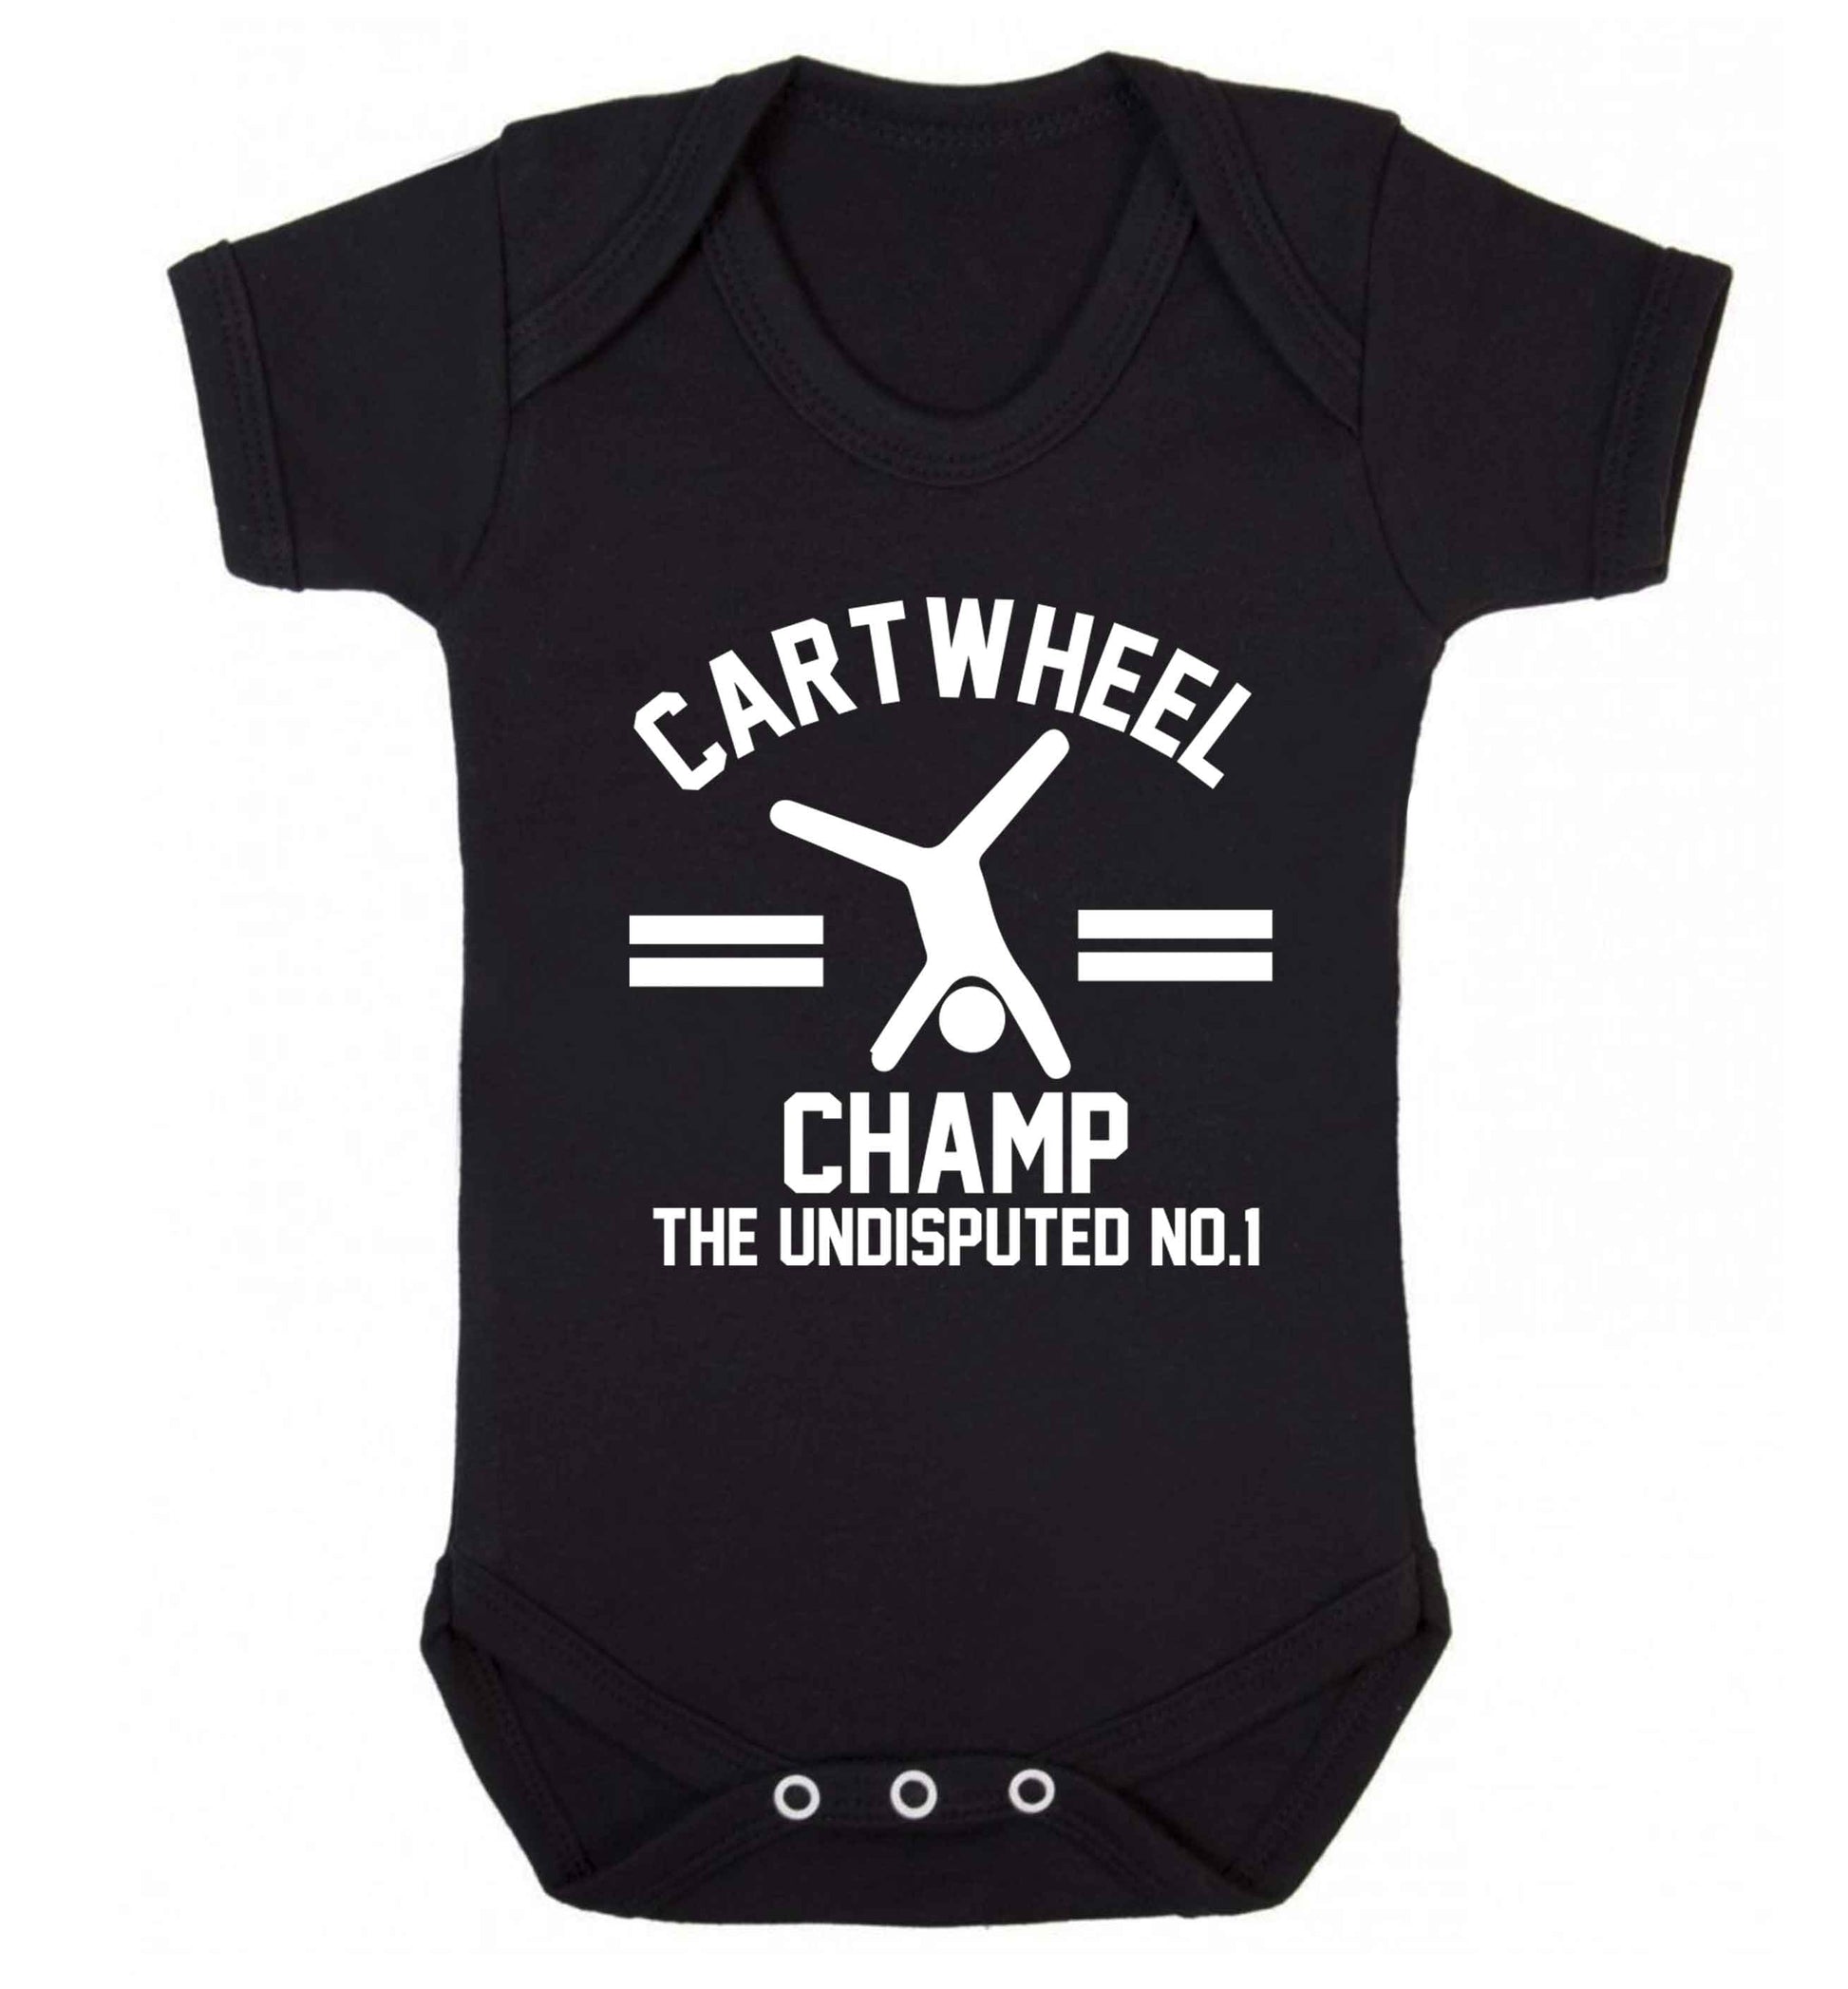 Undisputed cartwheel championship no.1  Baby Vest black 18-24 months